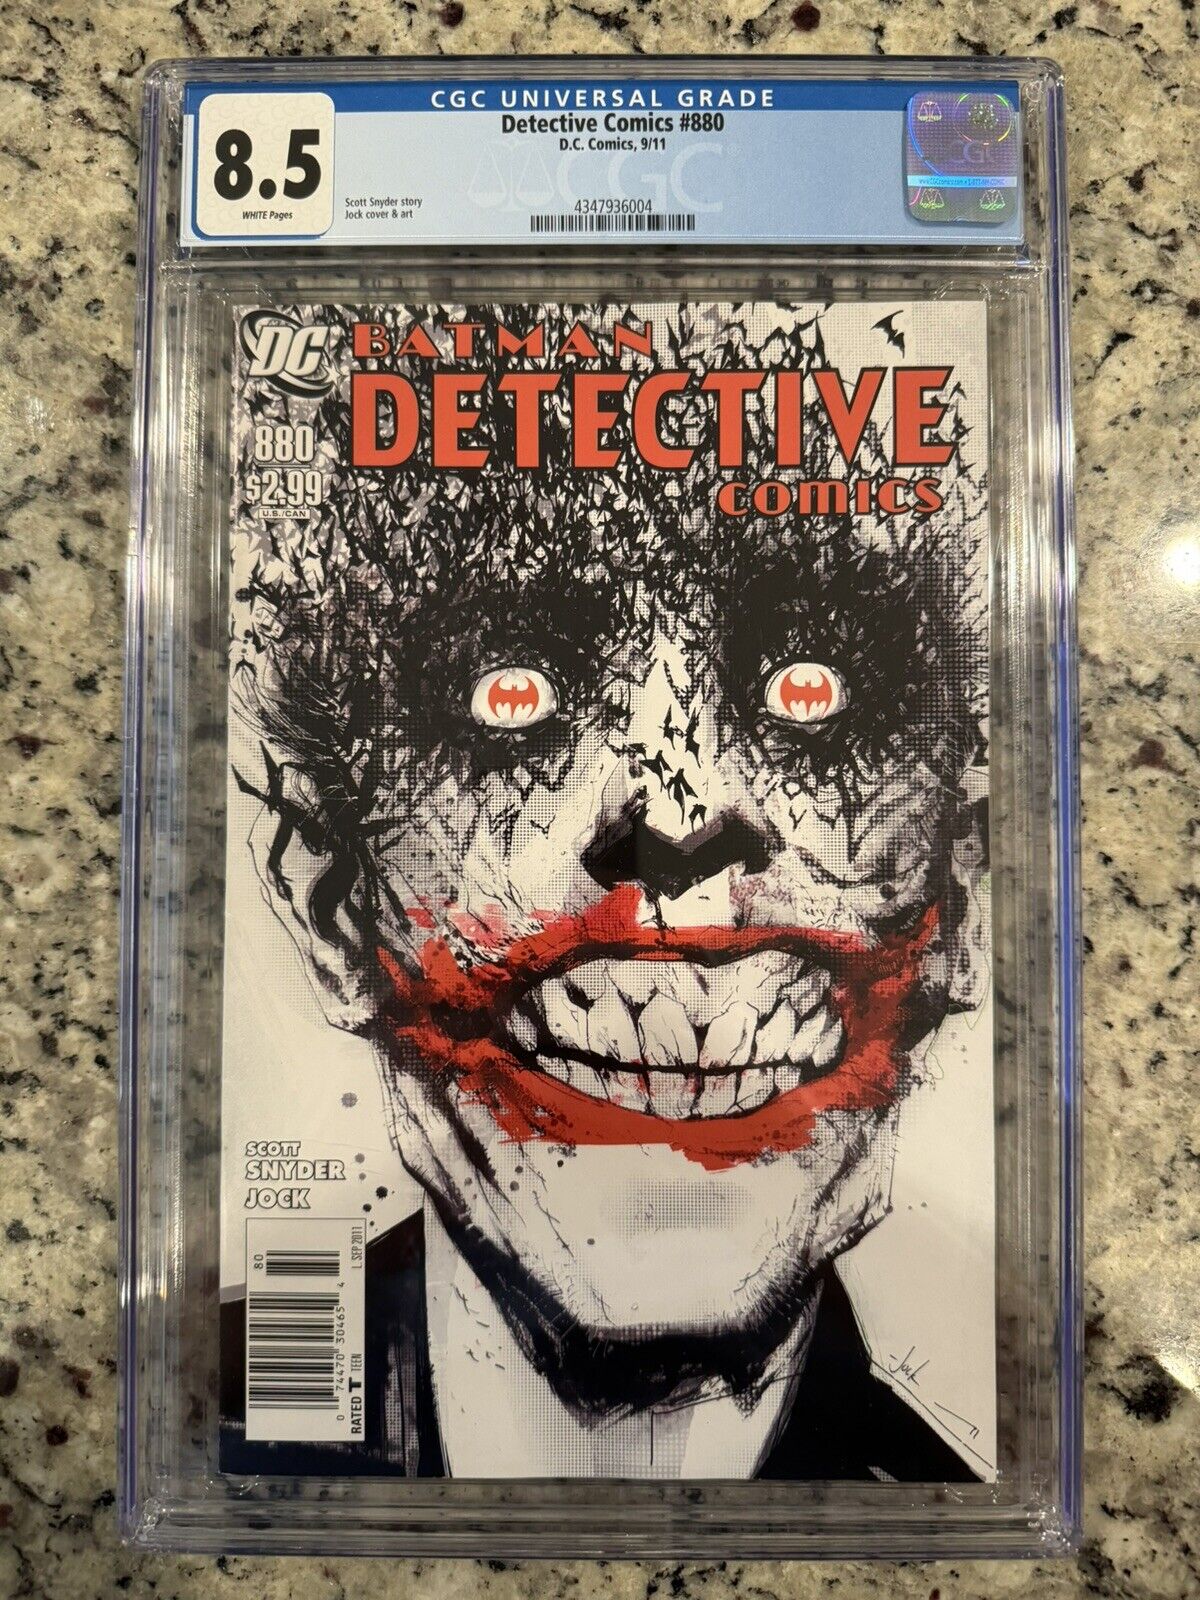 BATMAN DETECTIVE COMICS #880 CGC 8.5